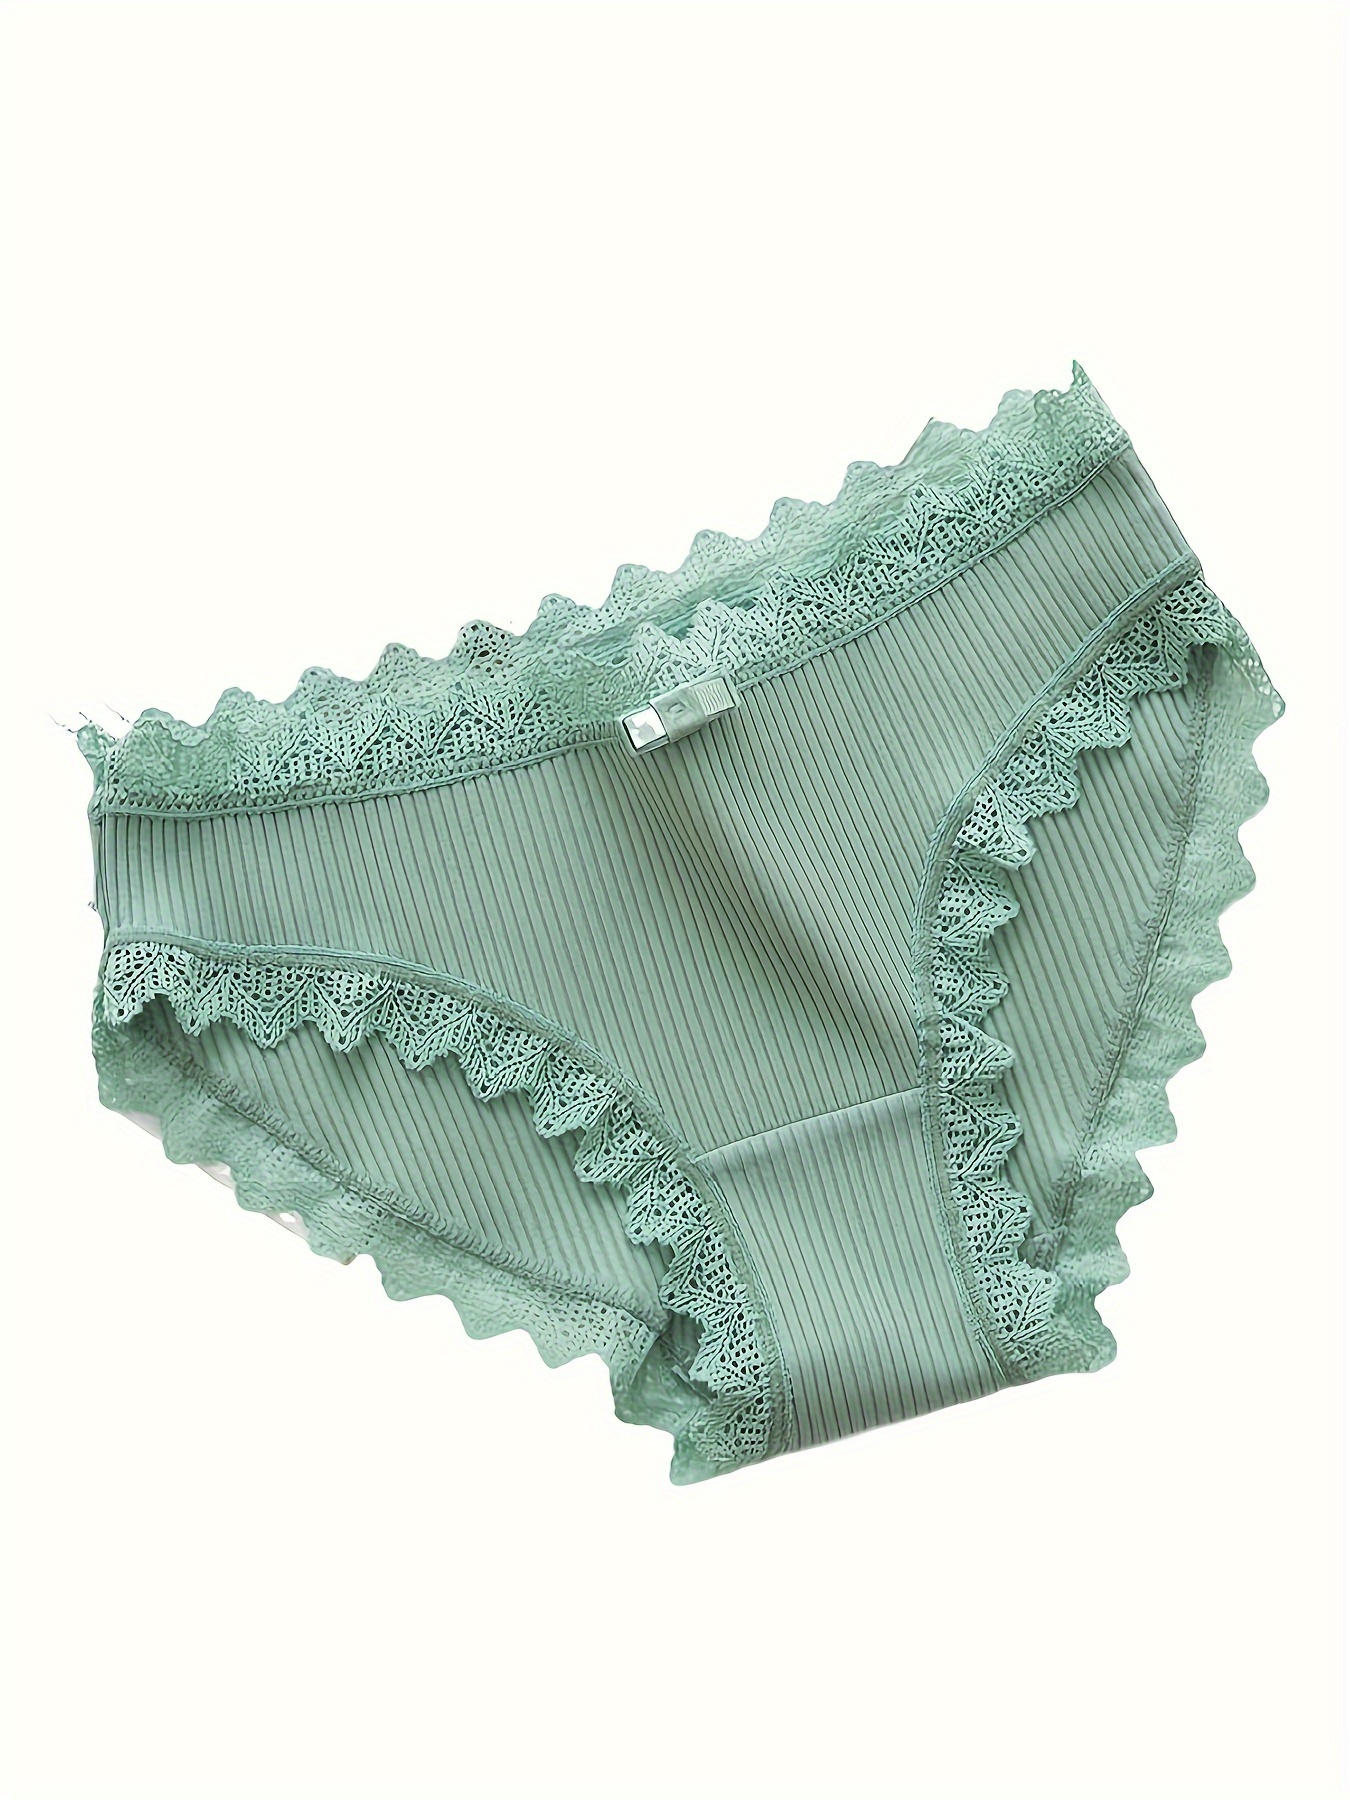 3pcs Girls Side Tie Underwear Cute Panties Kids Knickers Soft